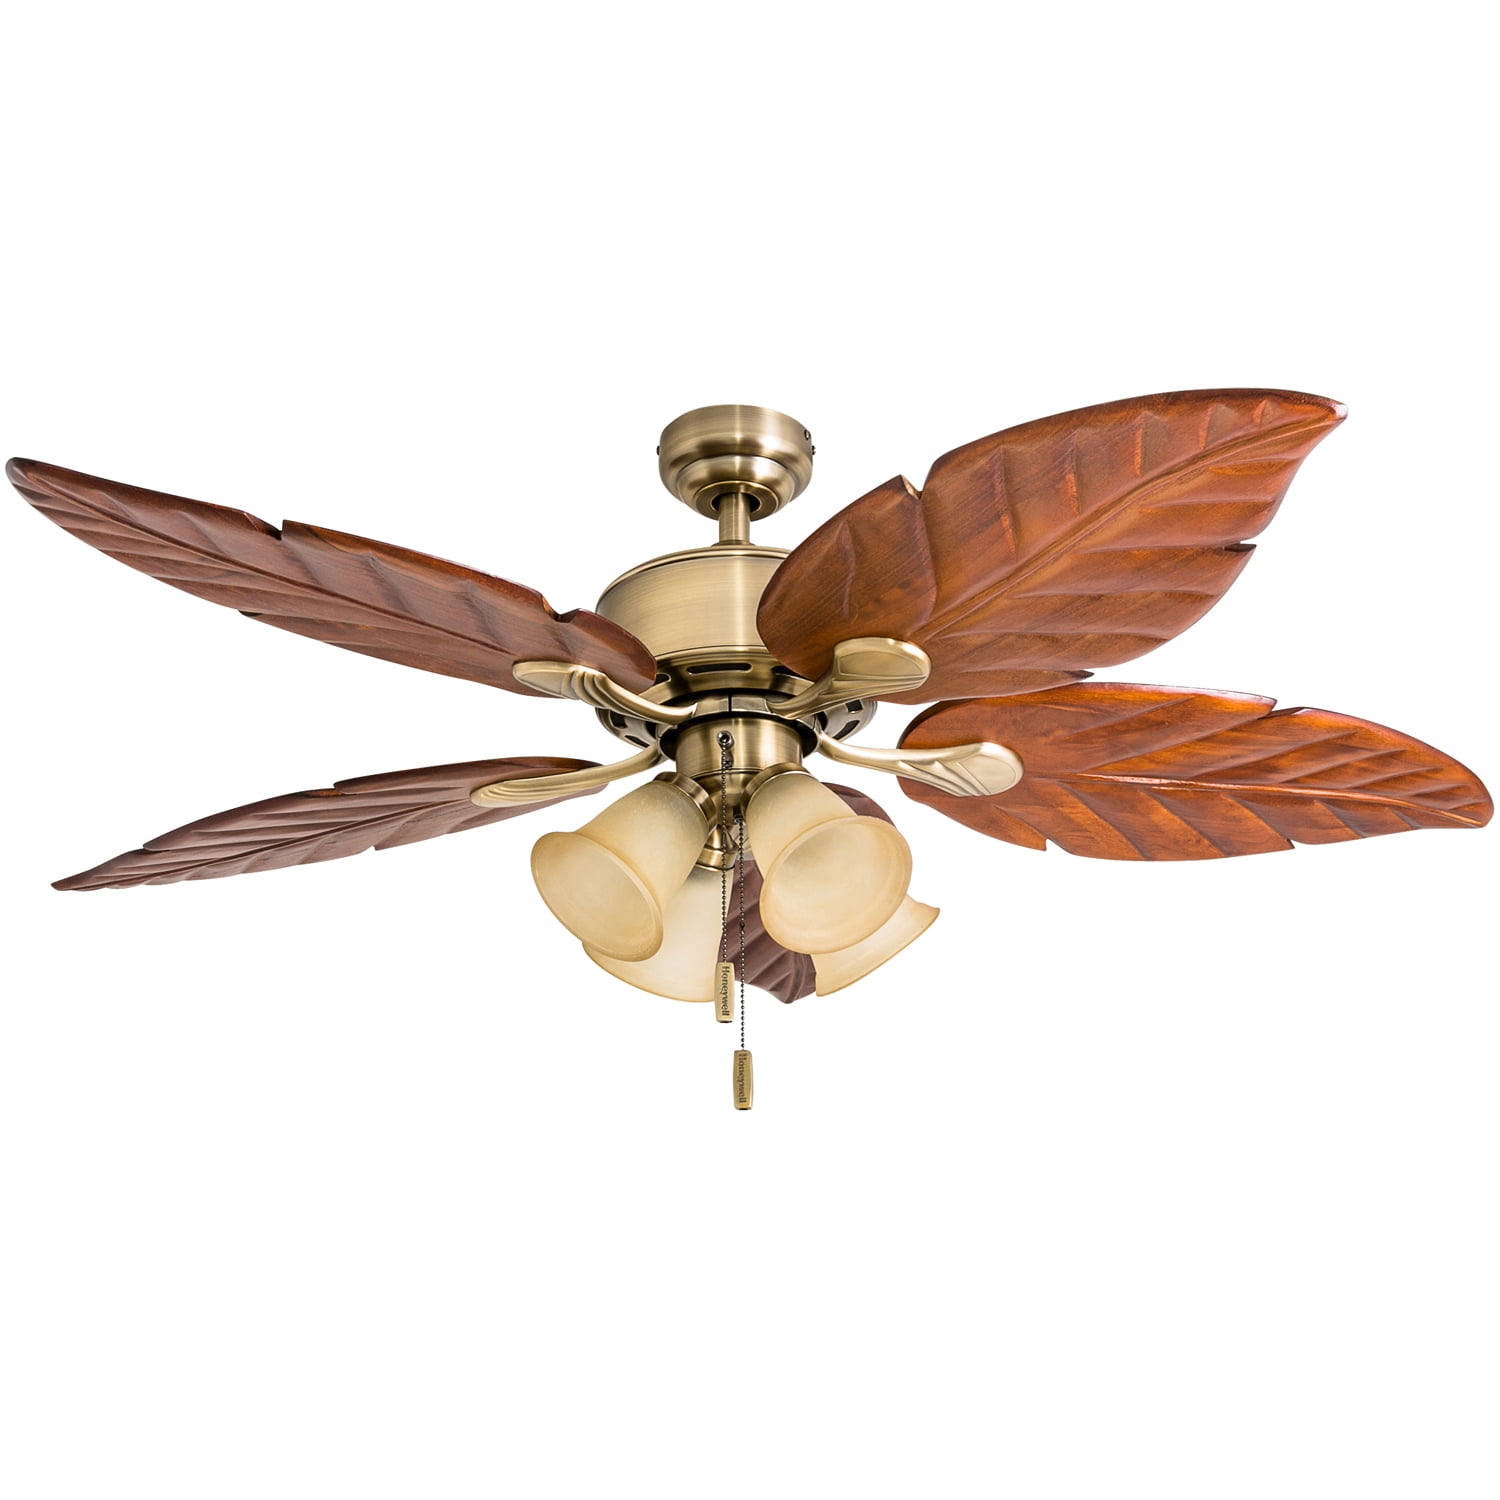 Honeywell 50500-01 52 inch Ceiling Fan Aged Brass for sale online 